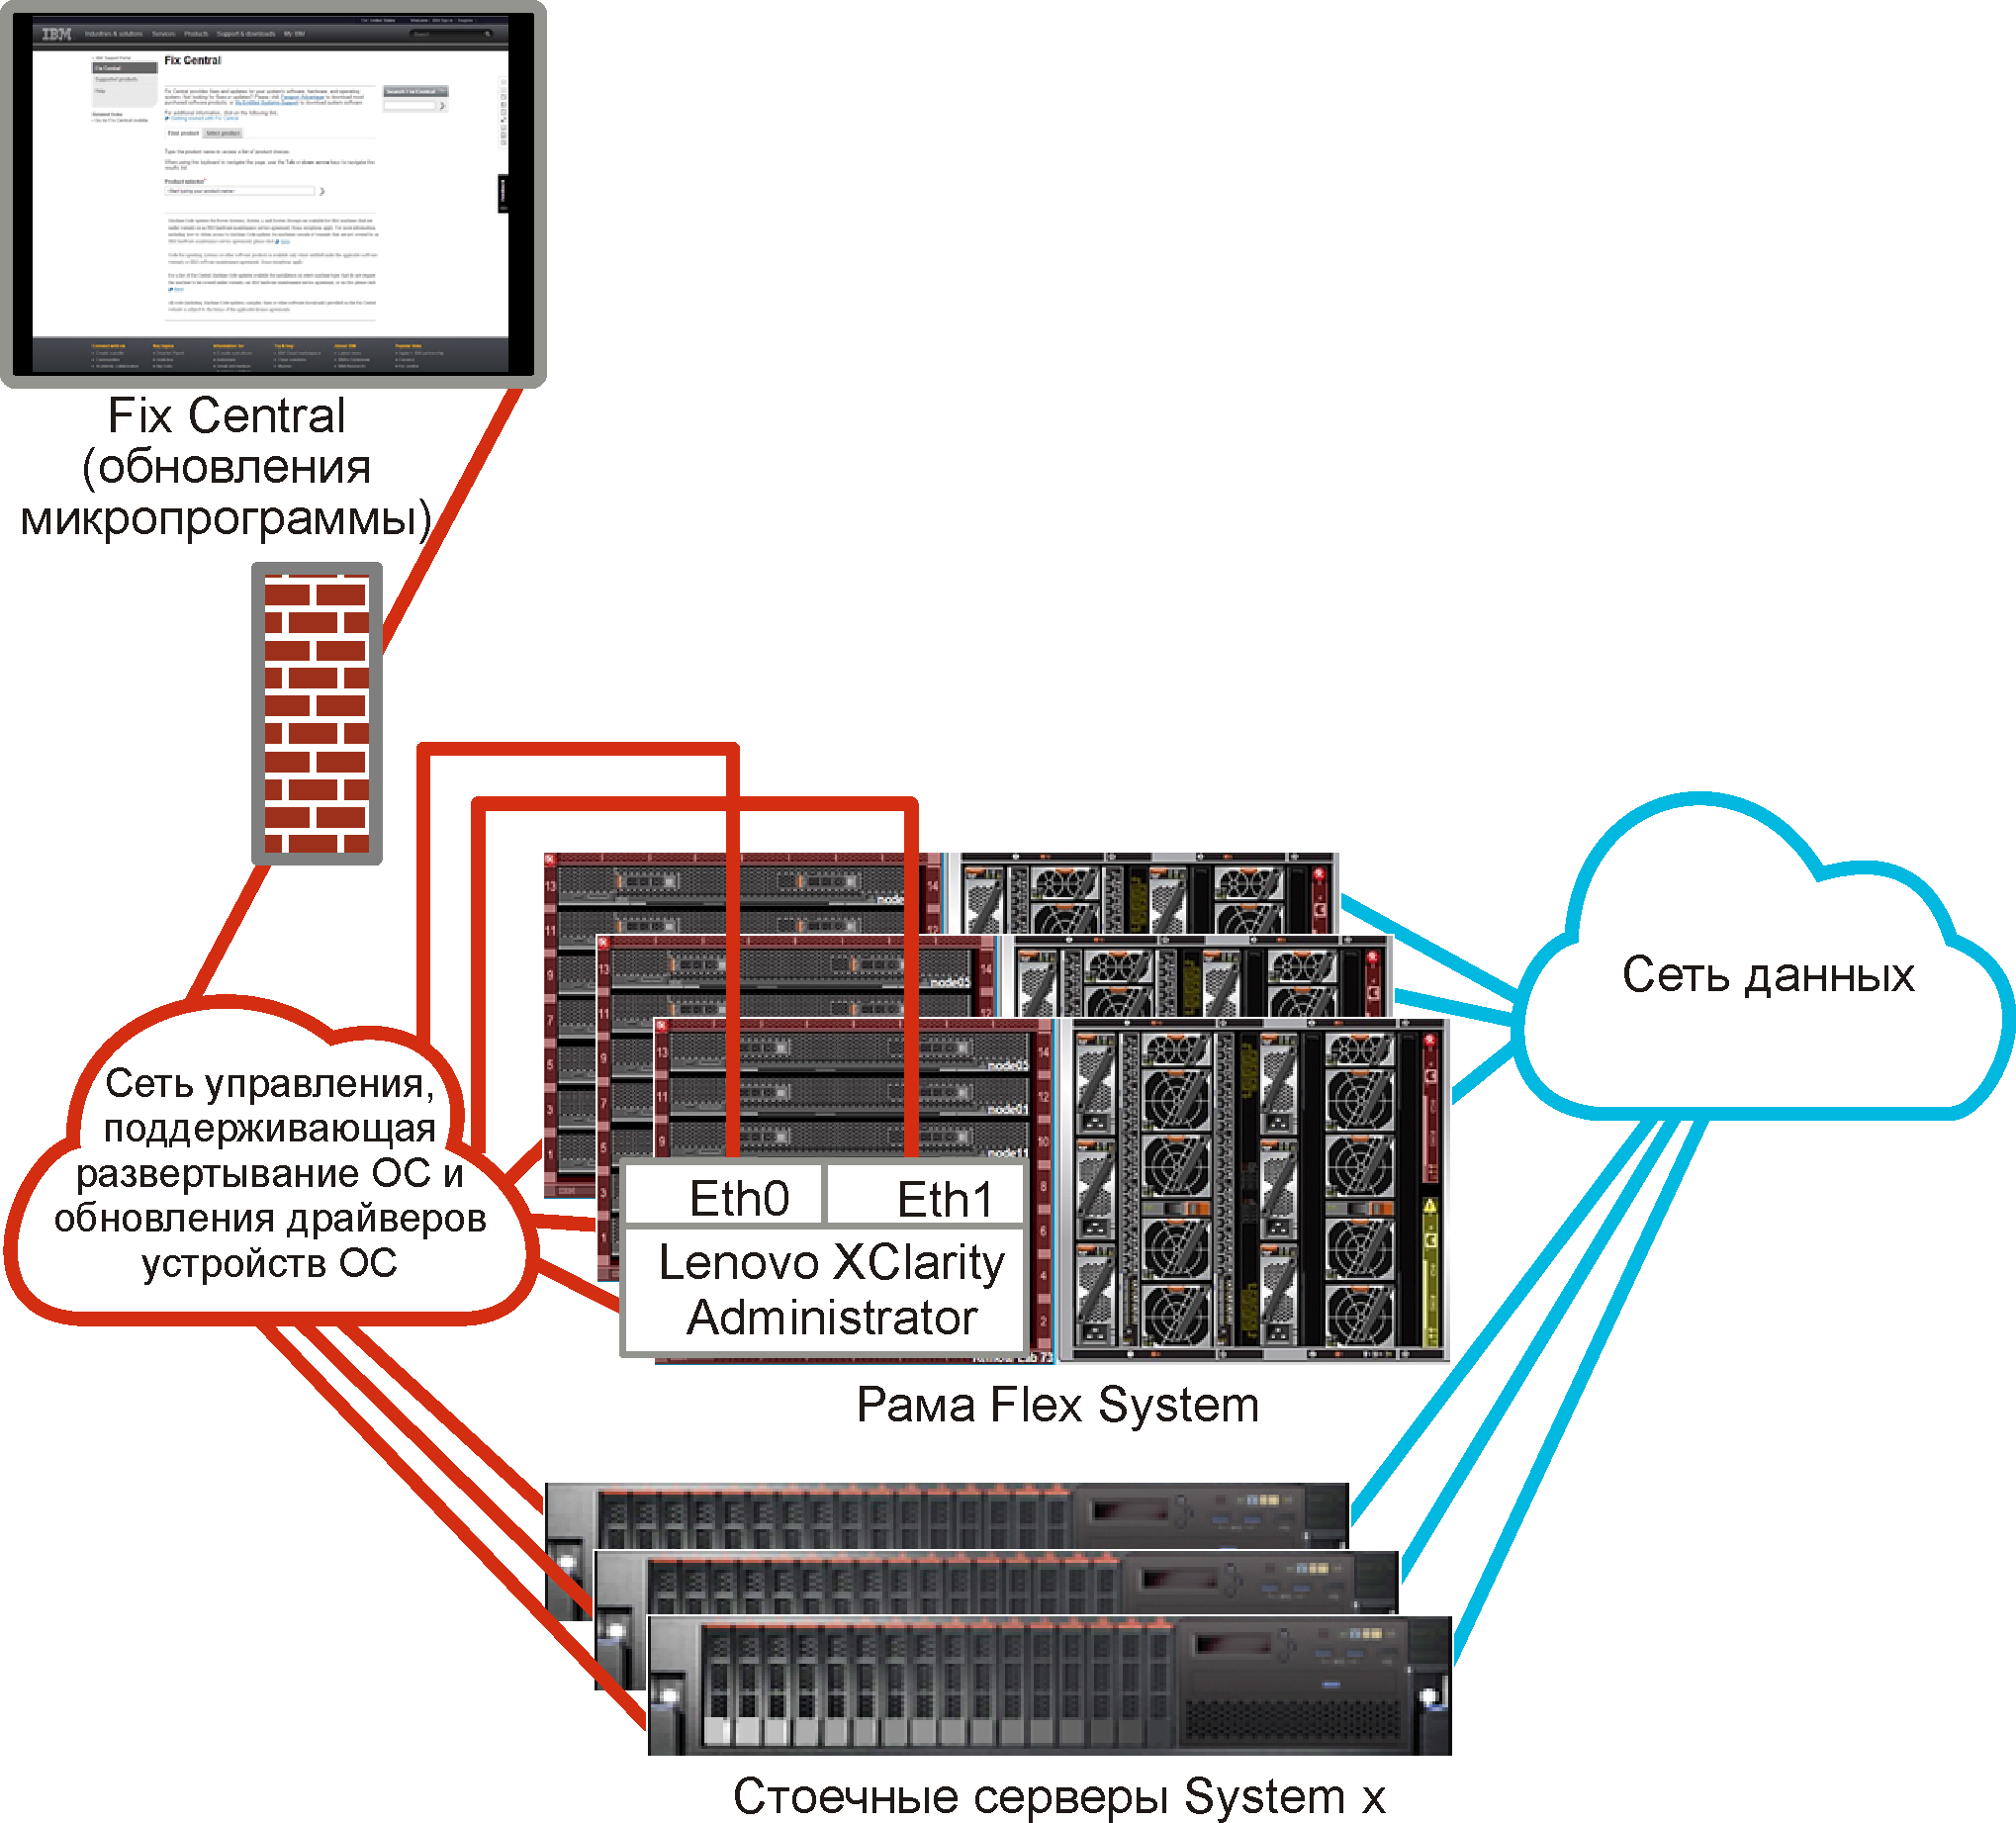 Рисунок с изображением общего представления виртуально разделенных сетей управления и данных, где сеть операционной системы является частью сети управления